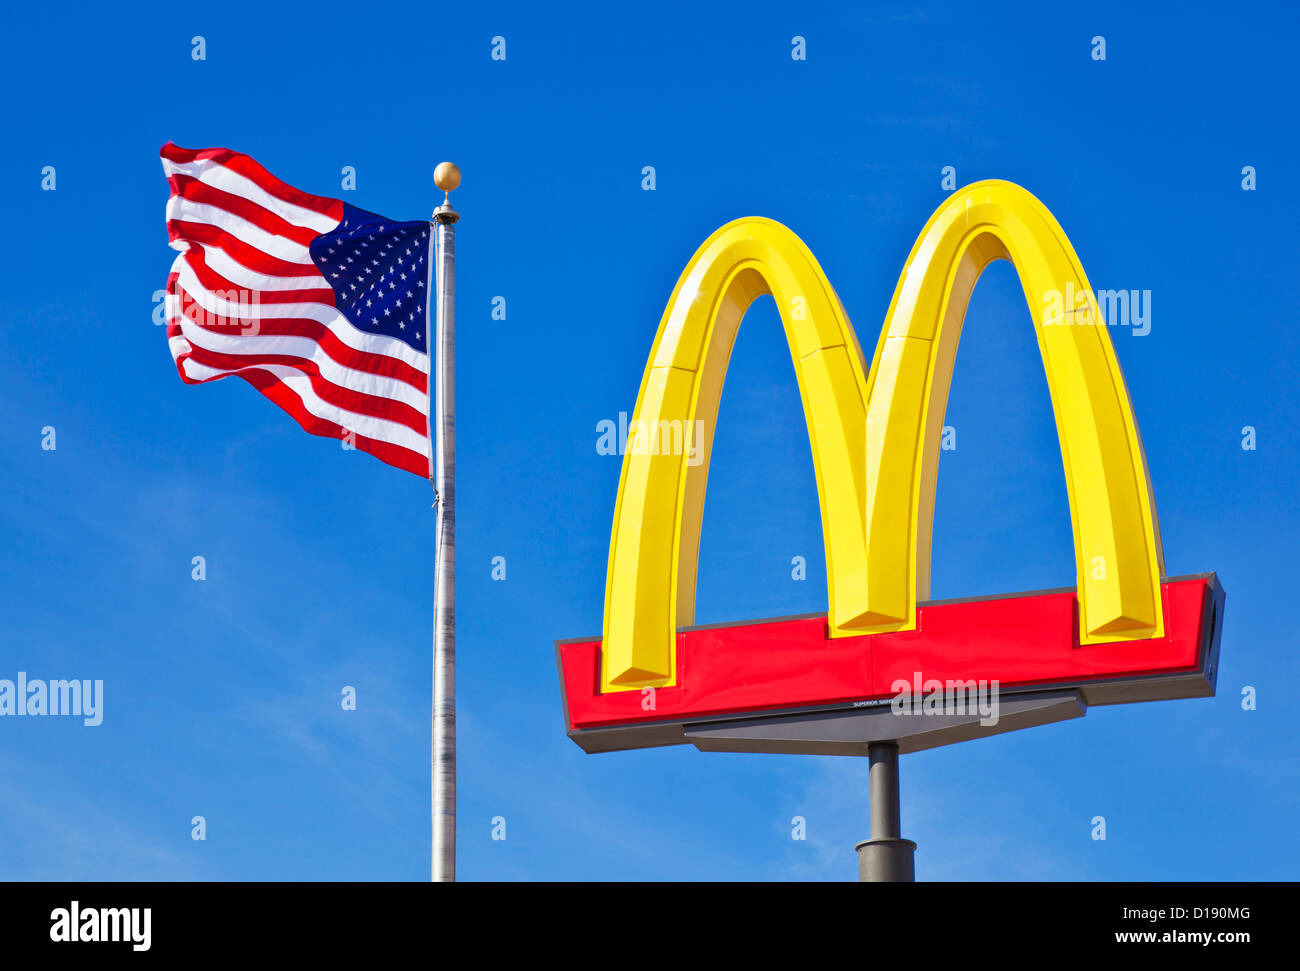 McDonald's-Logo Bögen Zeichen gegen ein klarer blauer Himmel mit einer amerikanischen Flagge Stars und stripes USA Vereinigte Staaten von Amerika Stockfoto